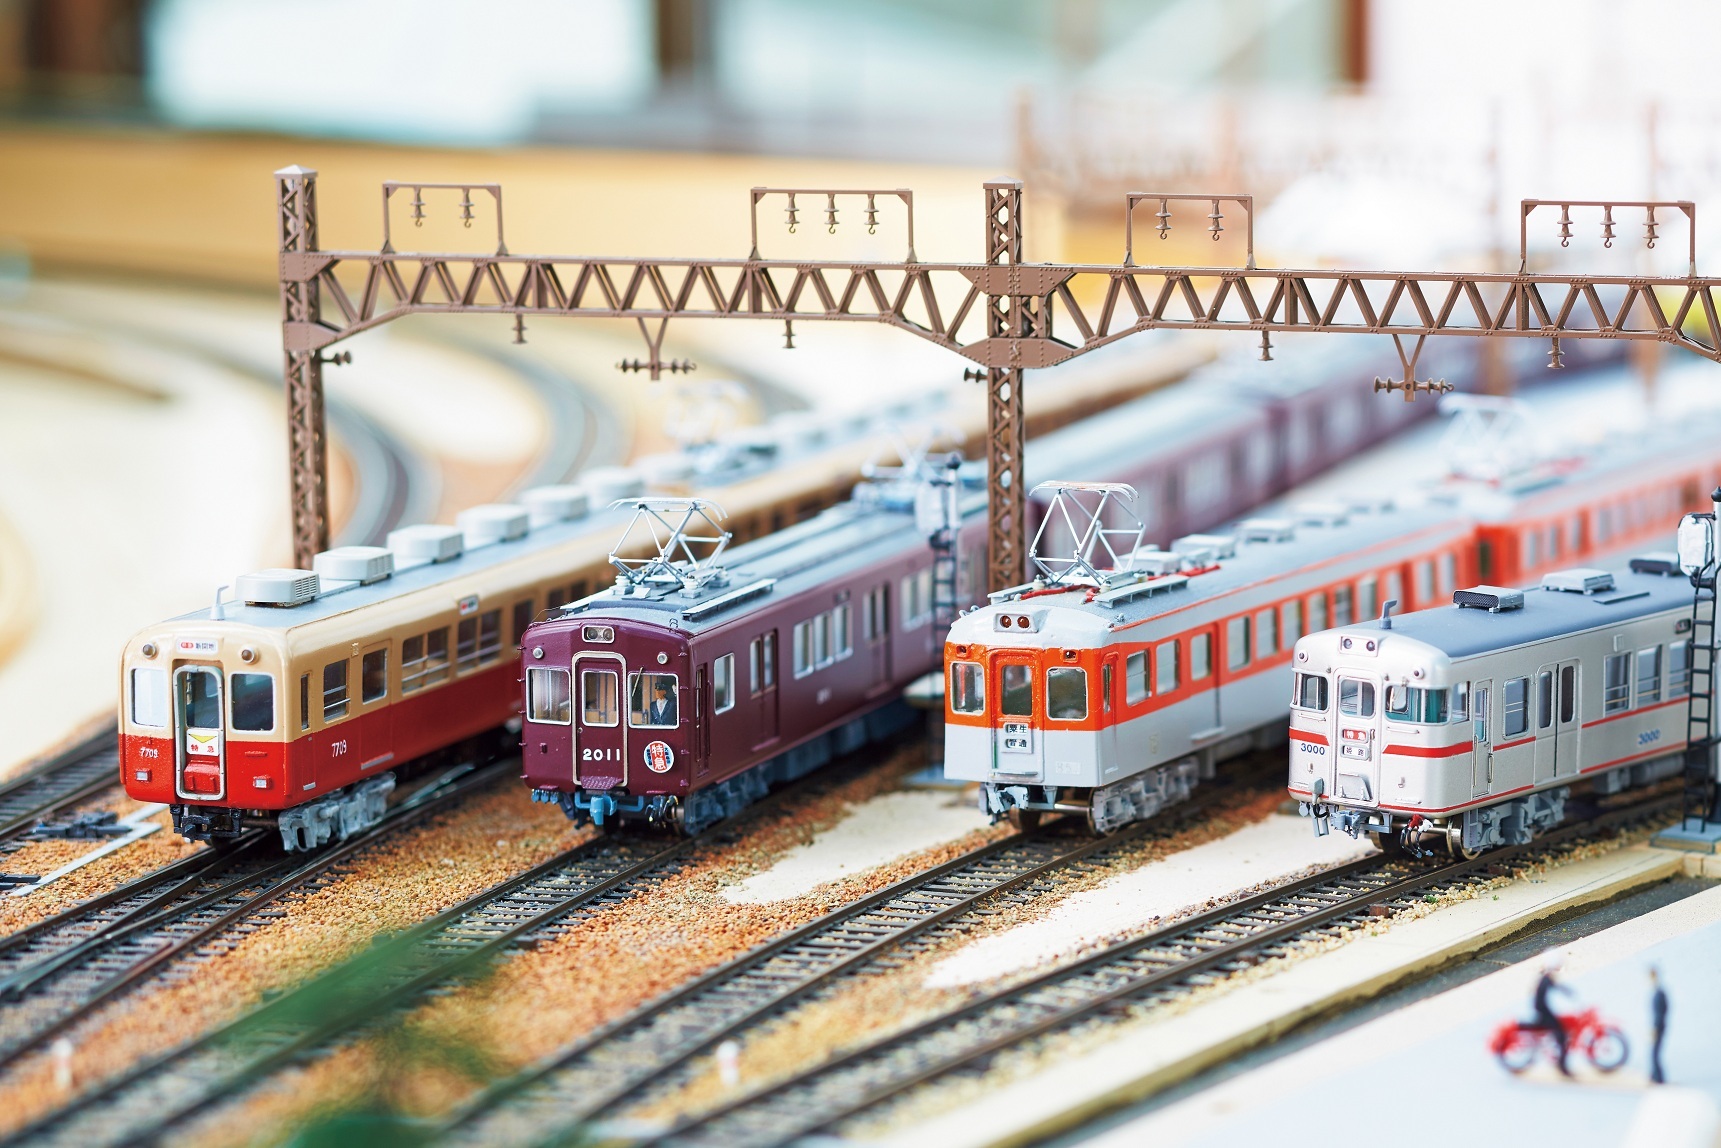 神戸高速線が開通当時に活躍していた4私鉄の車両が一堂に。 左から 阪神電車、 阪急電車、 神戸電鉄、 山陽電車